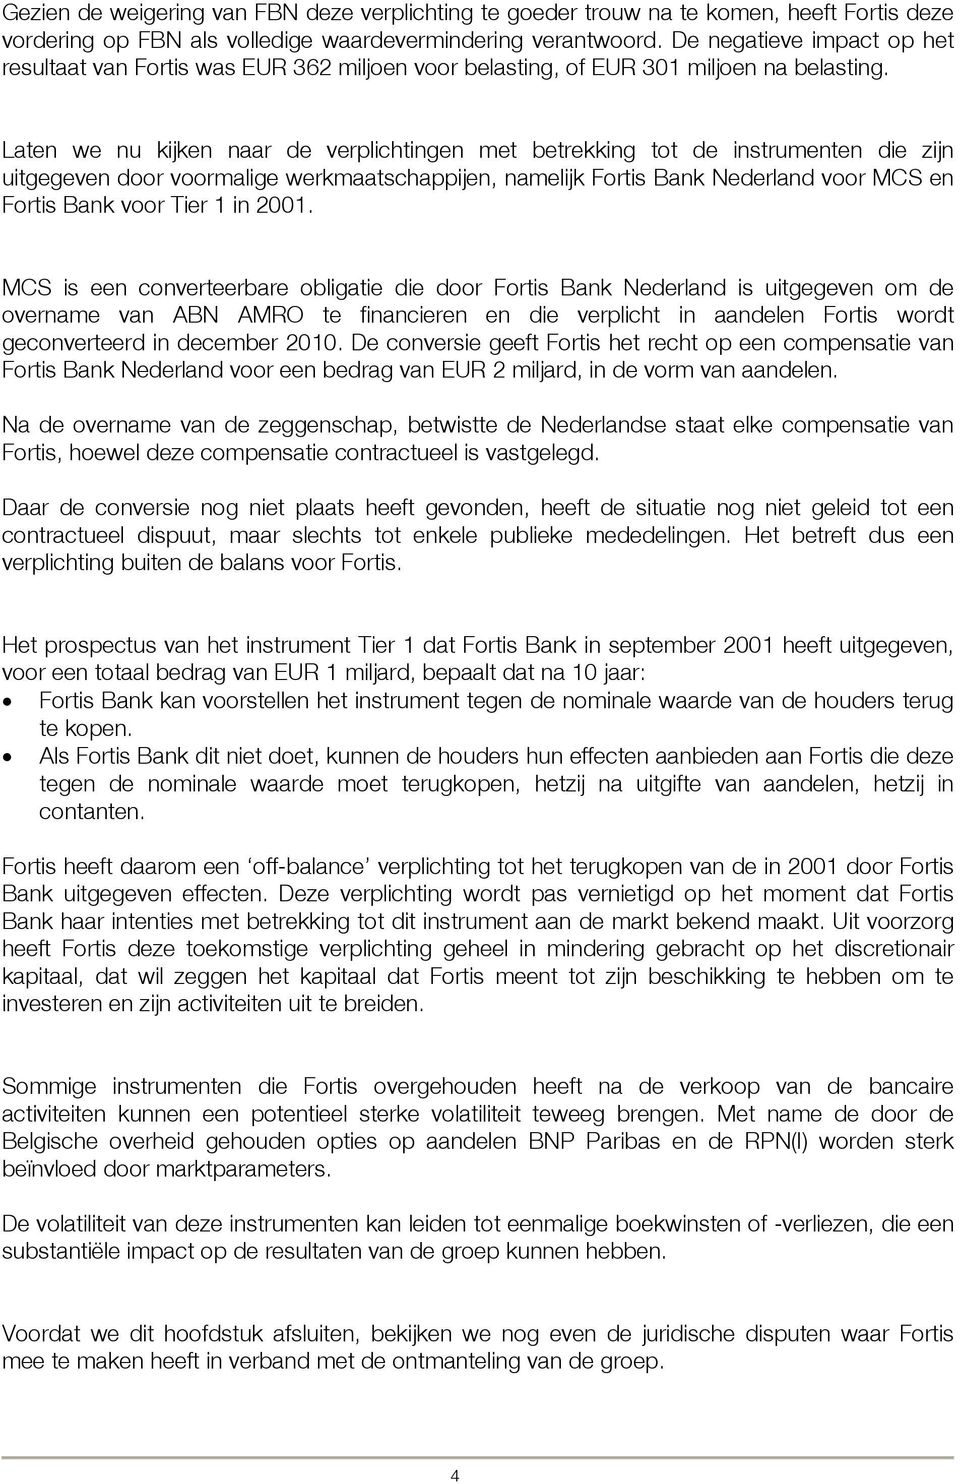 Laten we nu kijken naar de verplichtingen met betrekking tot de instrumenten die zijn uitgegeven door voormalige werkmaatschappijen, namelijk Fortis Bank Nederland voor MCS en Fortis Bank voor Tier 1